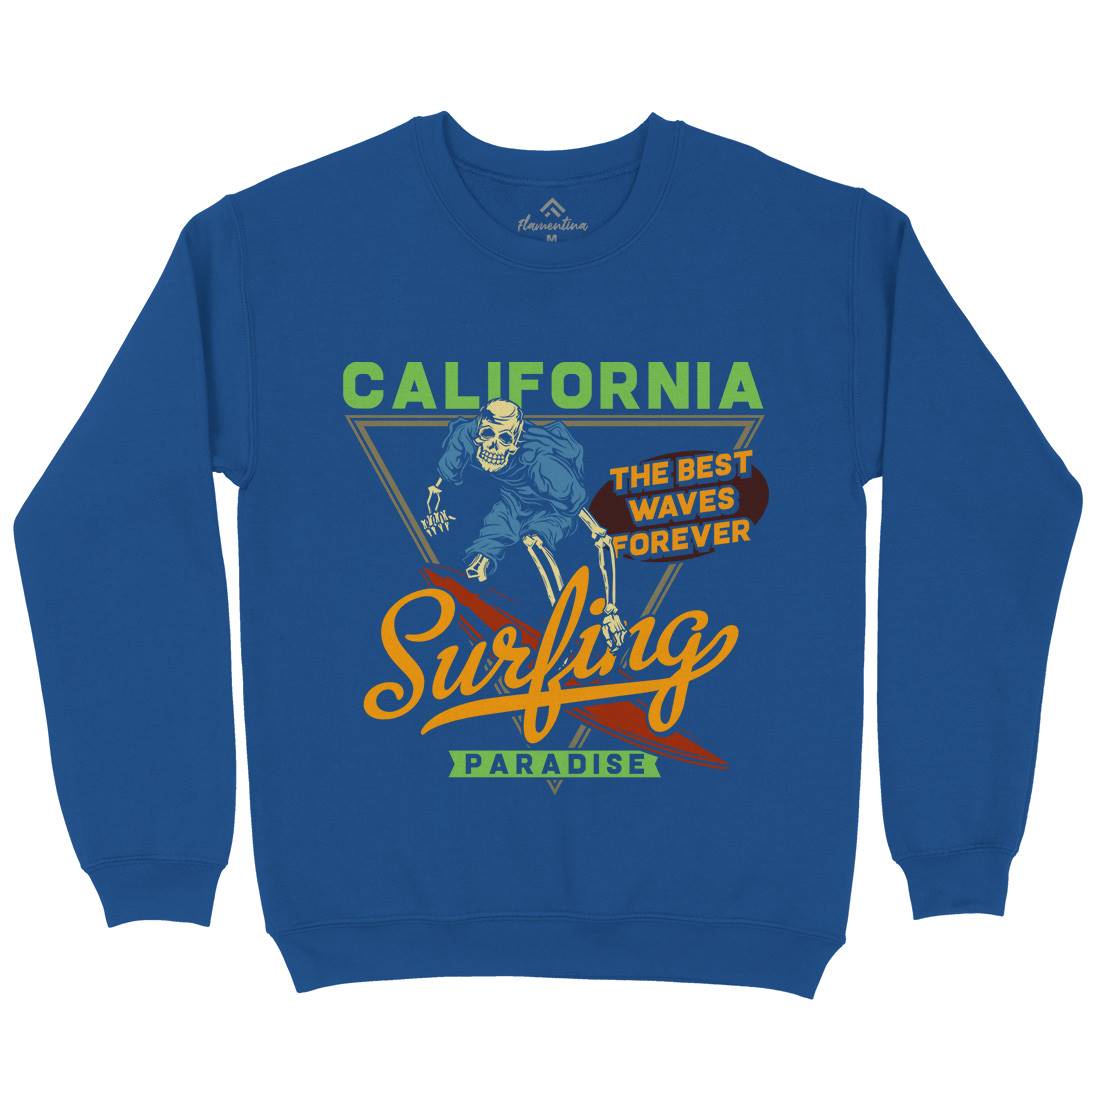 California Surfing Kids Crew Neck Sweatshirt Surf B875